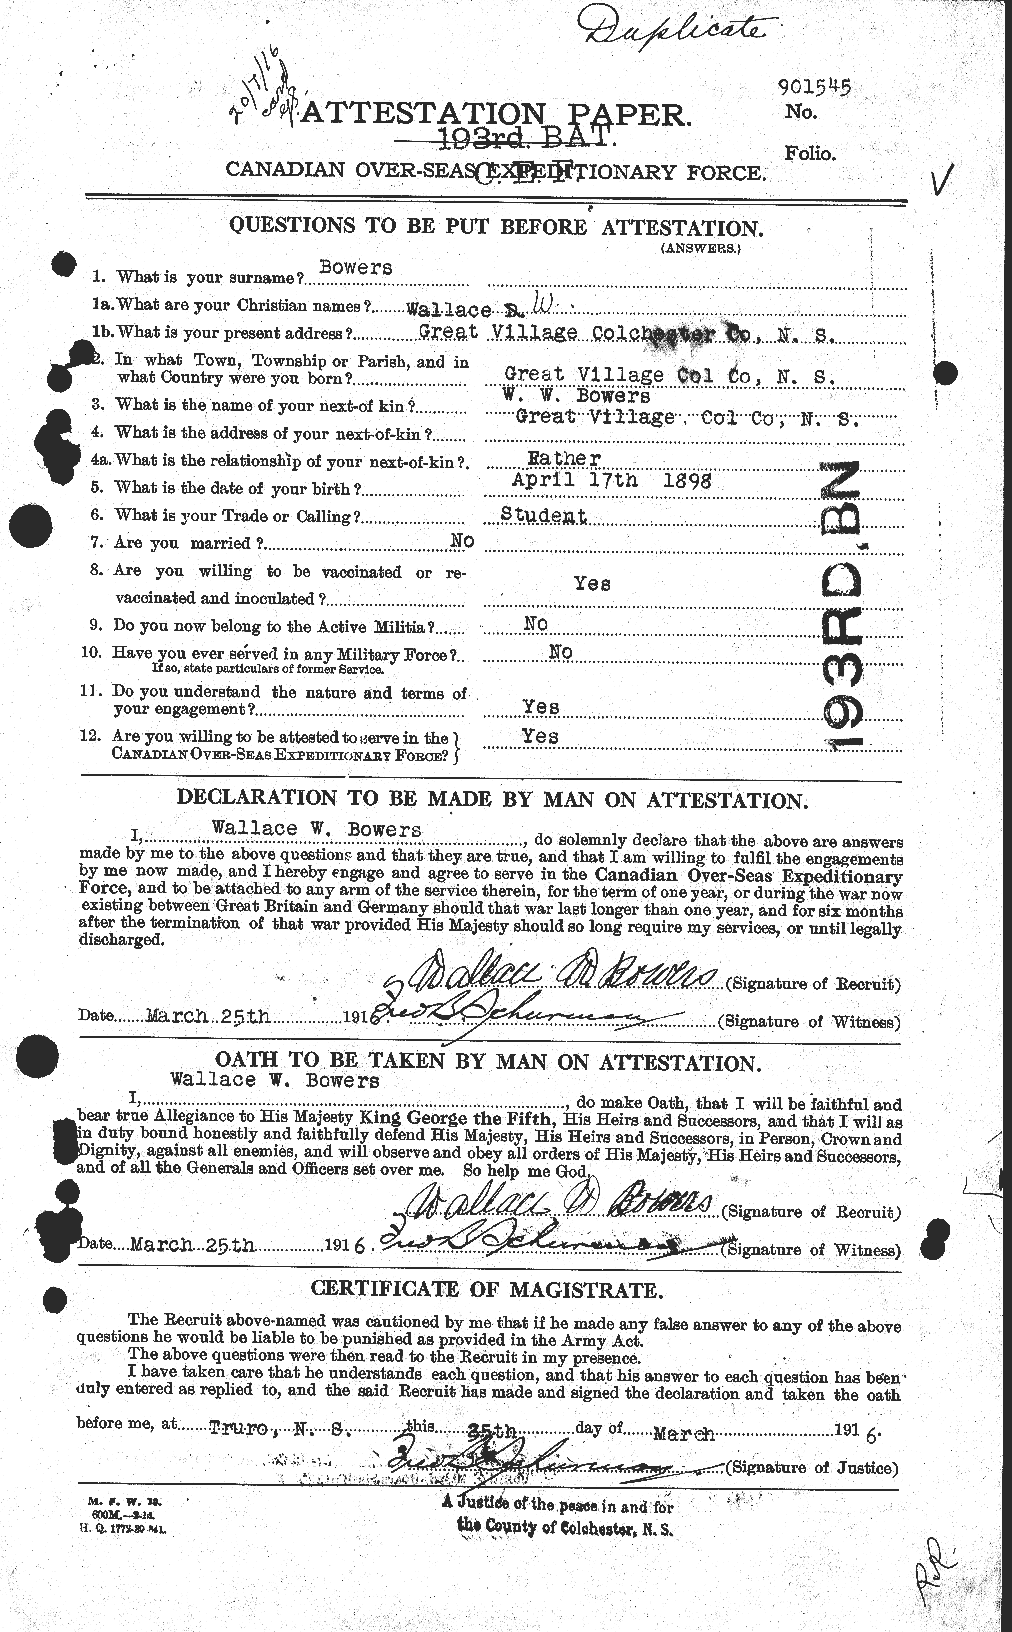 Dossiers du Personnel de la Première Guerre mondiale - CEC 253582a